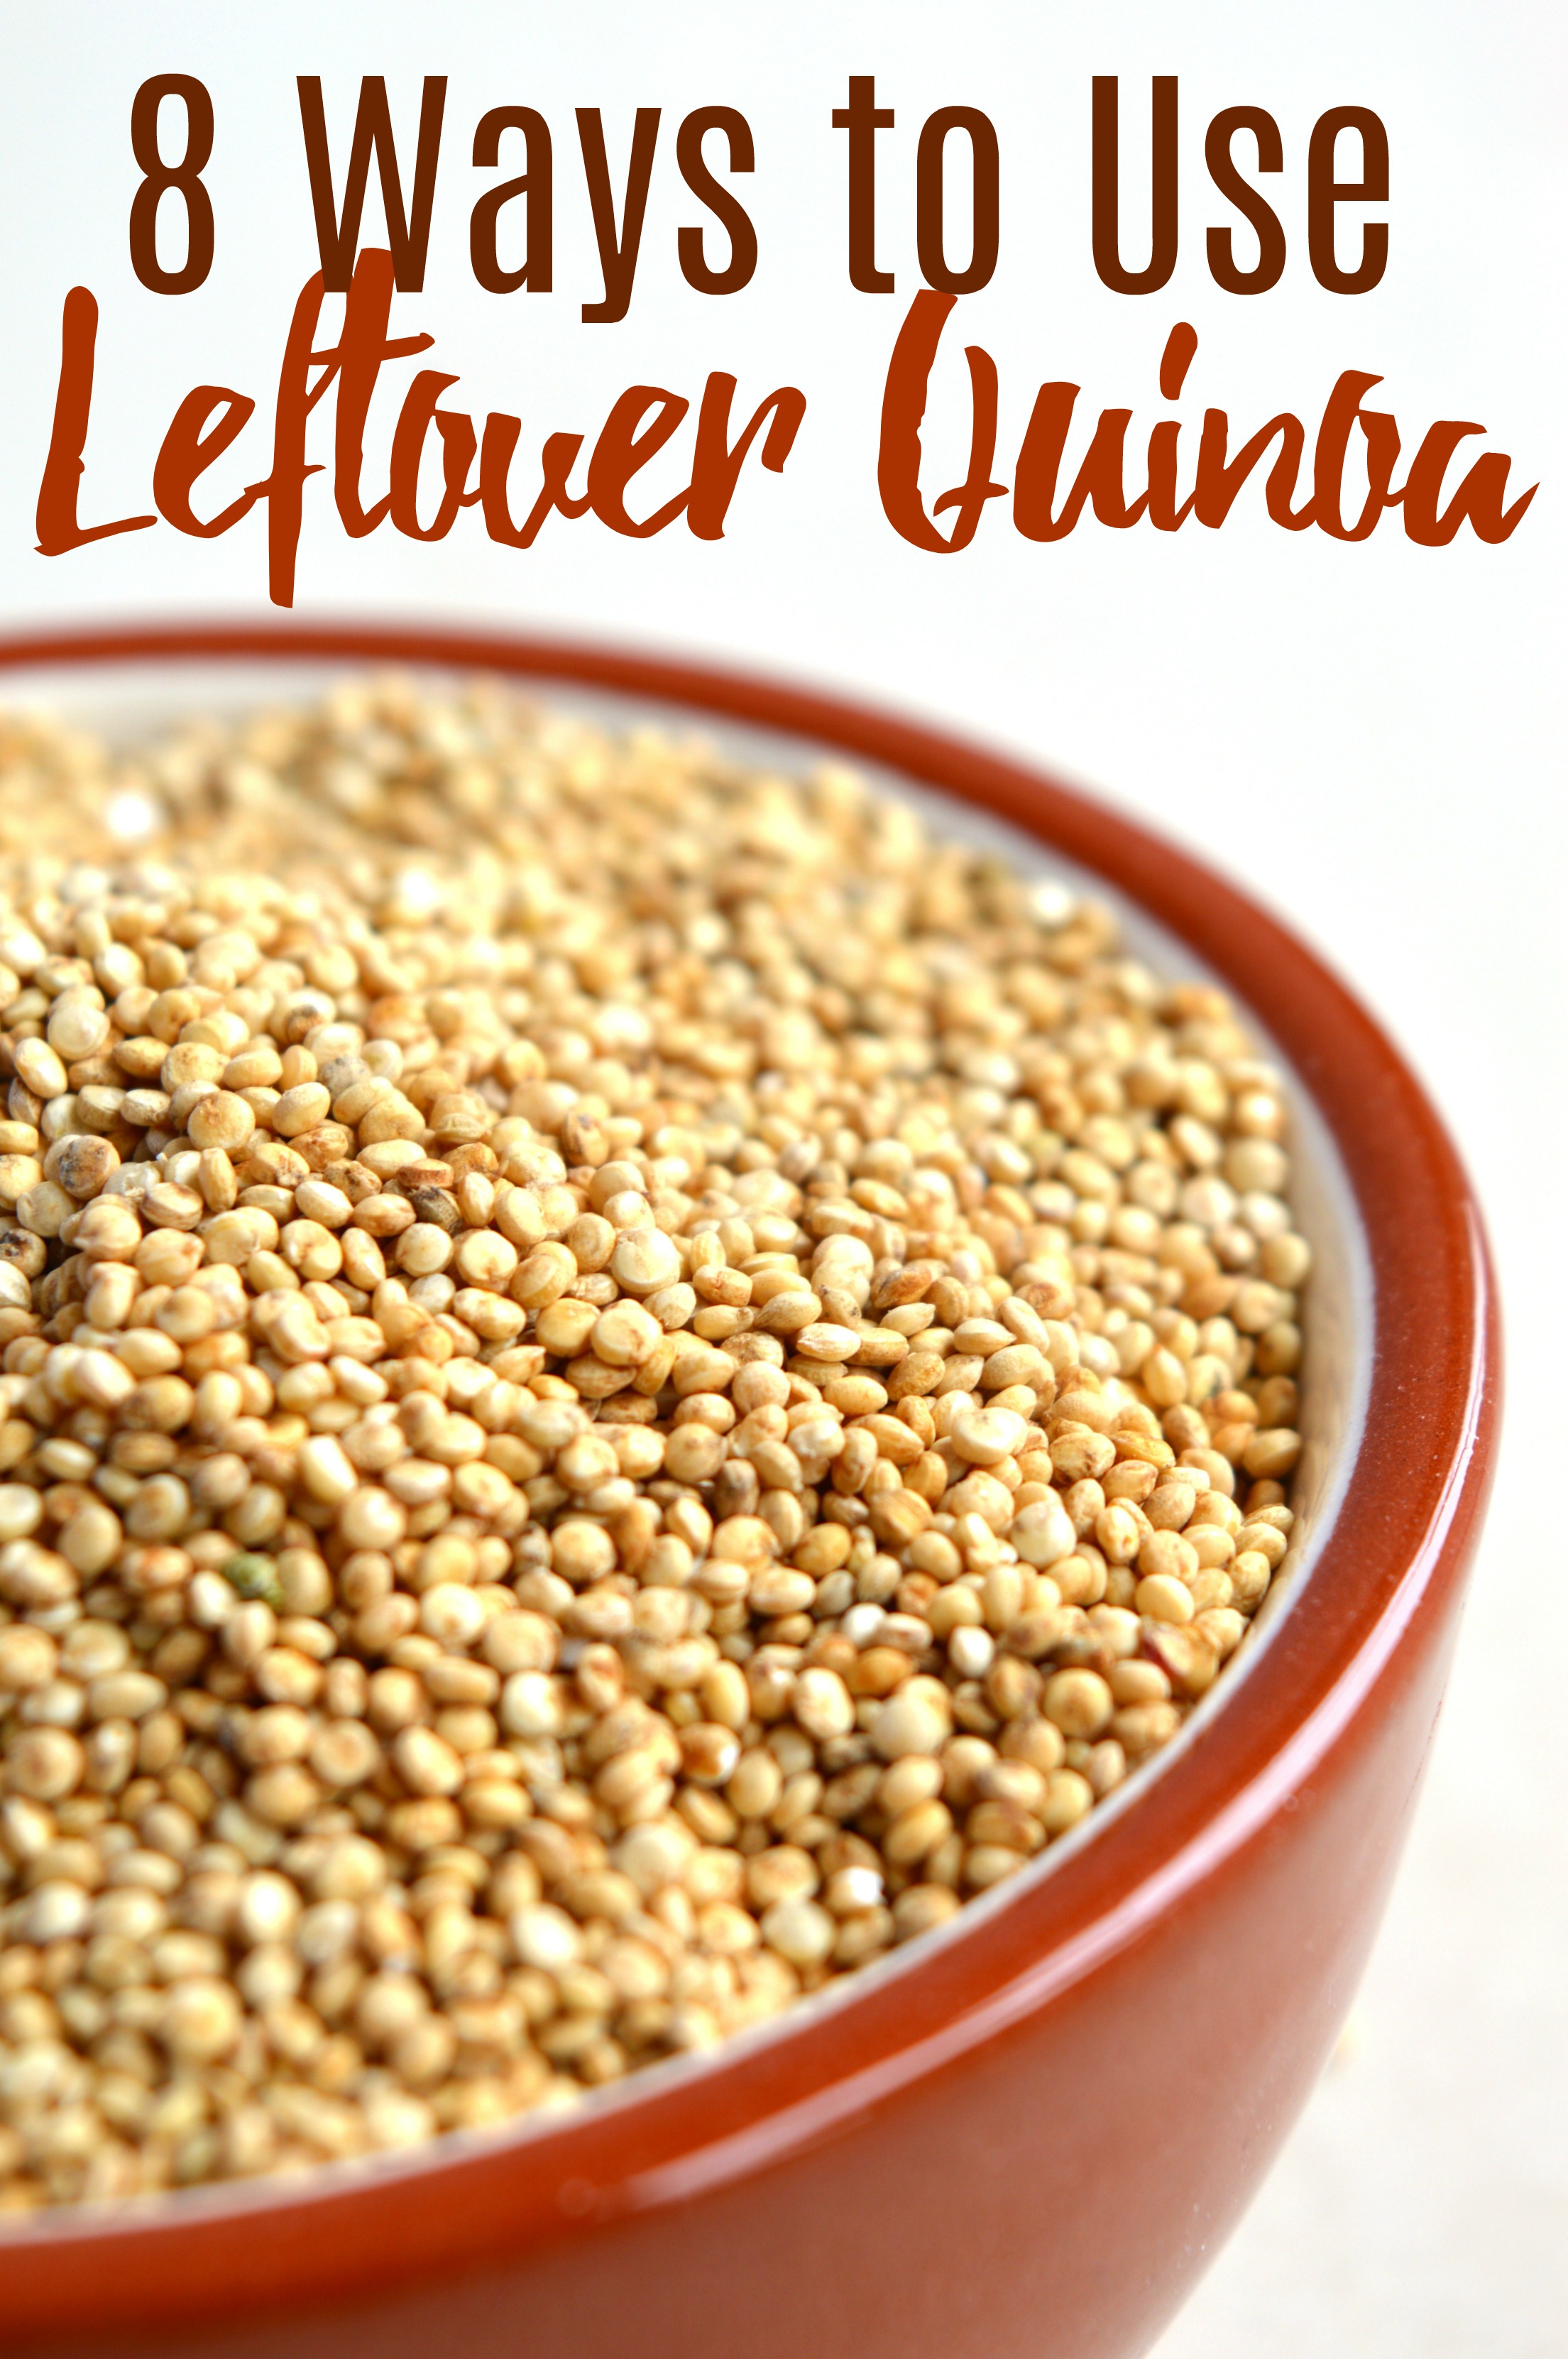 8 Ways to Use Leftover Quinoa